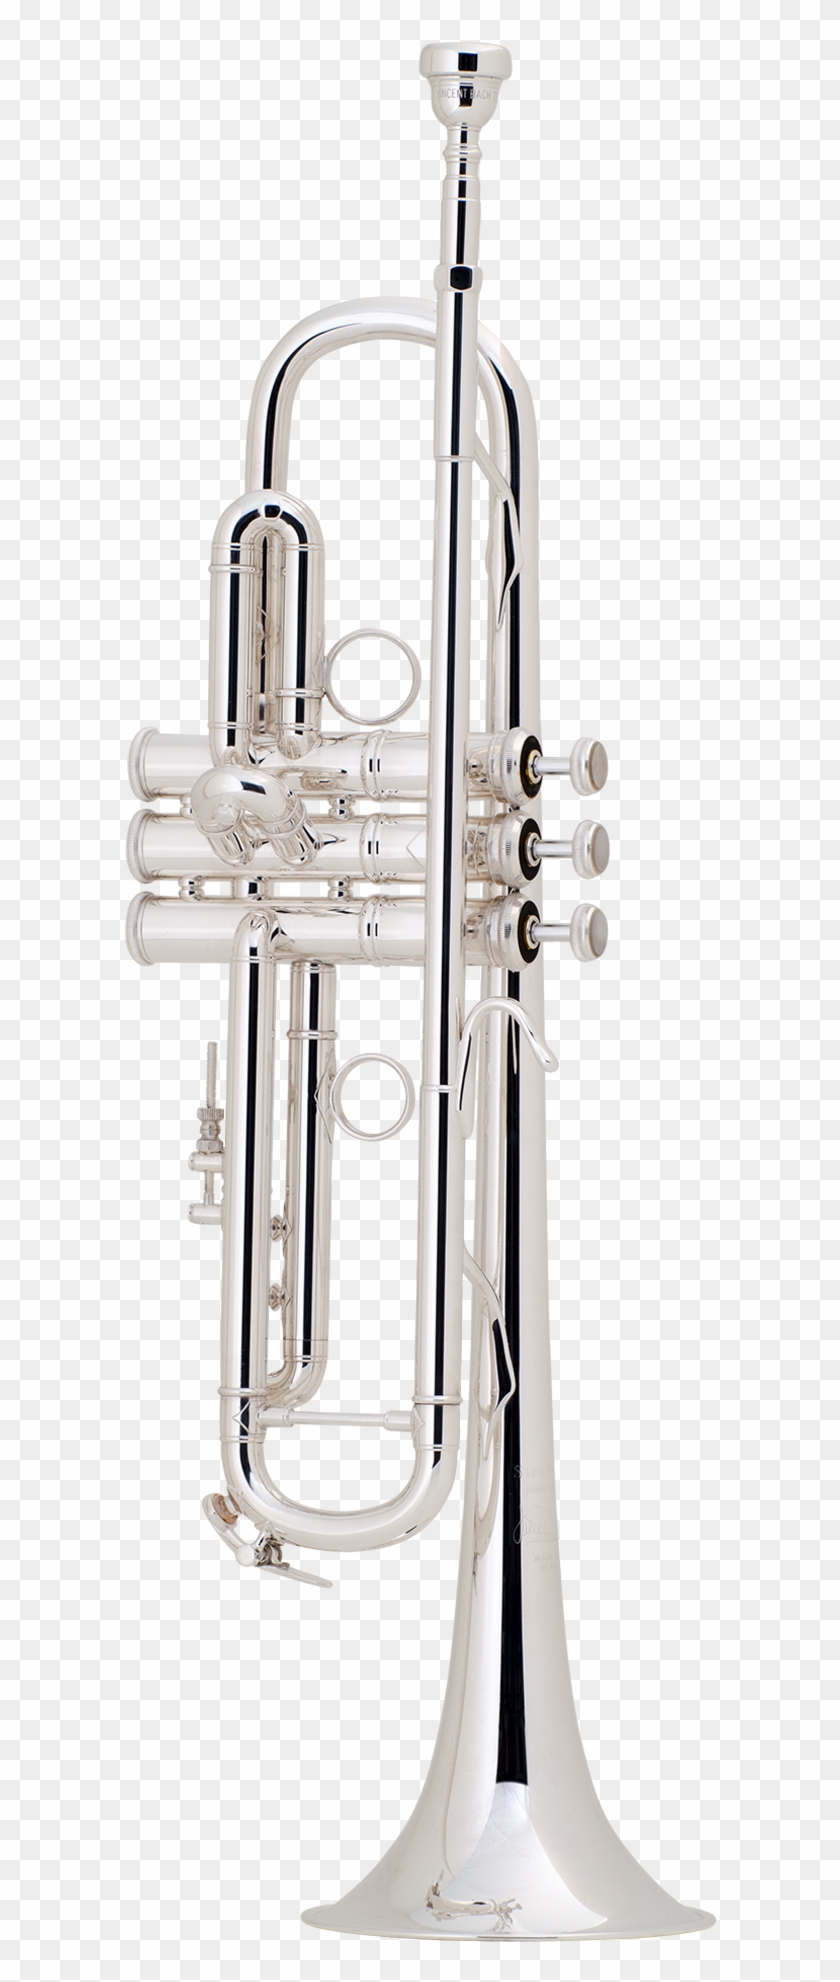 Lt180s77 Trumpet - Trumpet Clipart #1207342